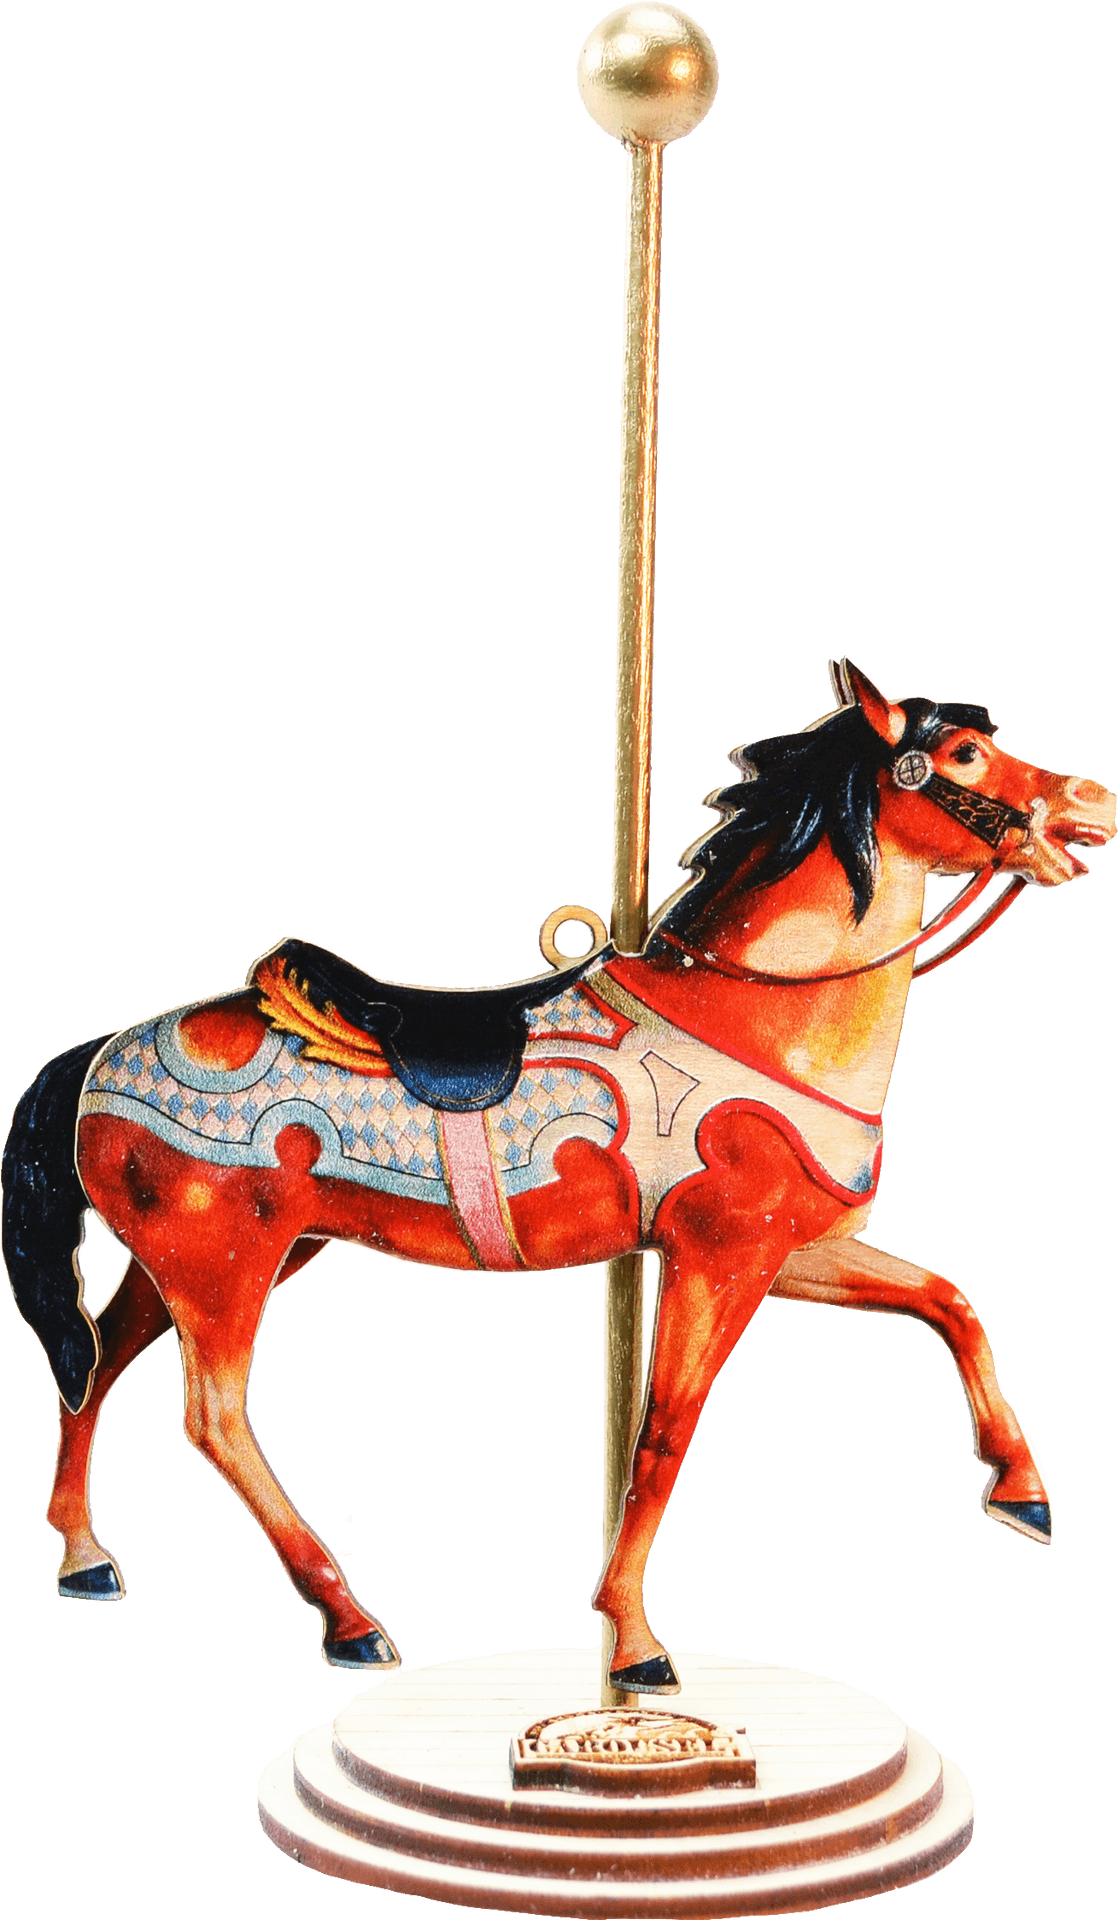 Vintage Carousel Horse Illustration PNG